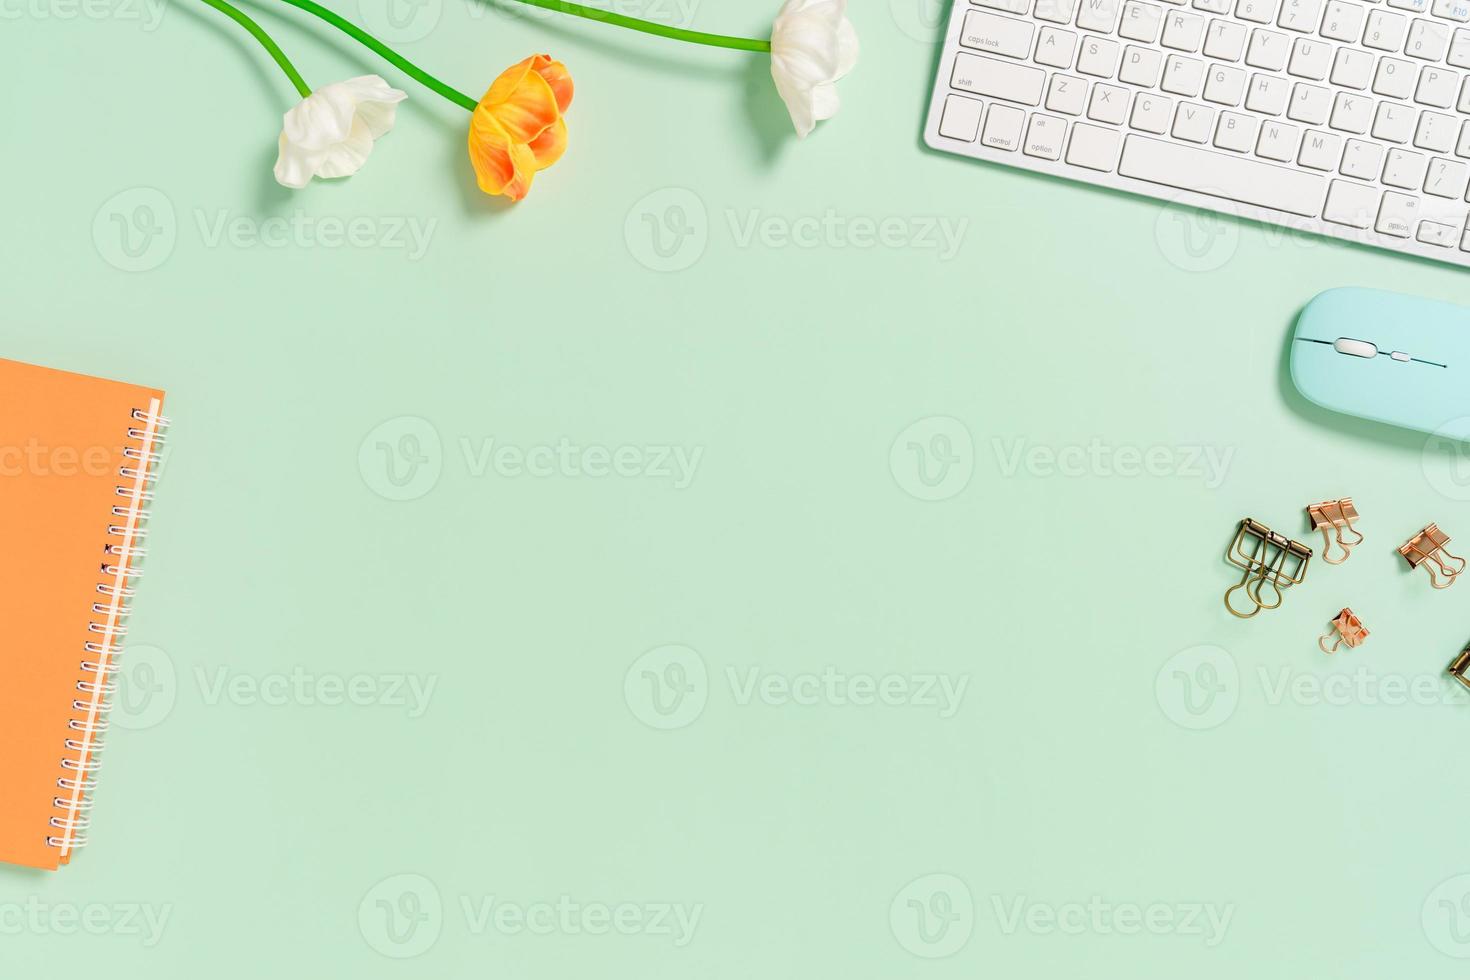 espaço de trabalho mínimo - foto criativa plana da mesa do espaço de trabalho. mesa de escritório de vista superior com teclado, mouse e notebook no fundo da cor verde pastel. vista superior com espaço de cópia, fotografia plana leiga.